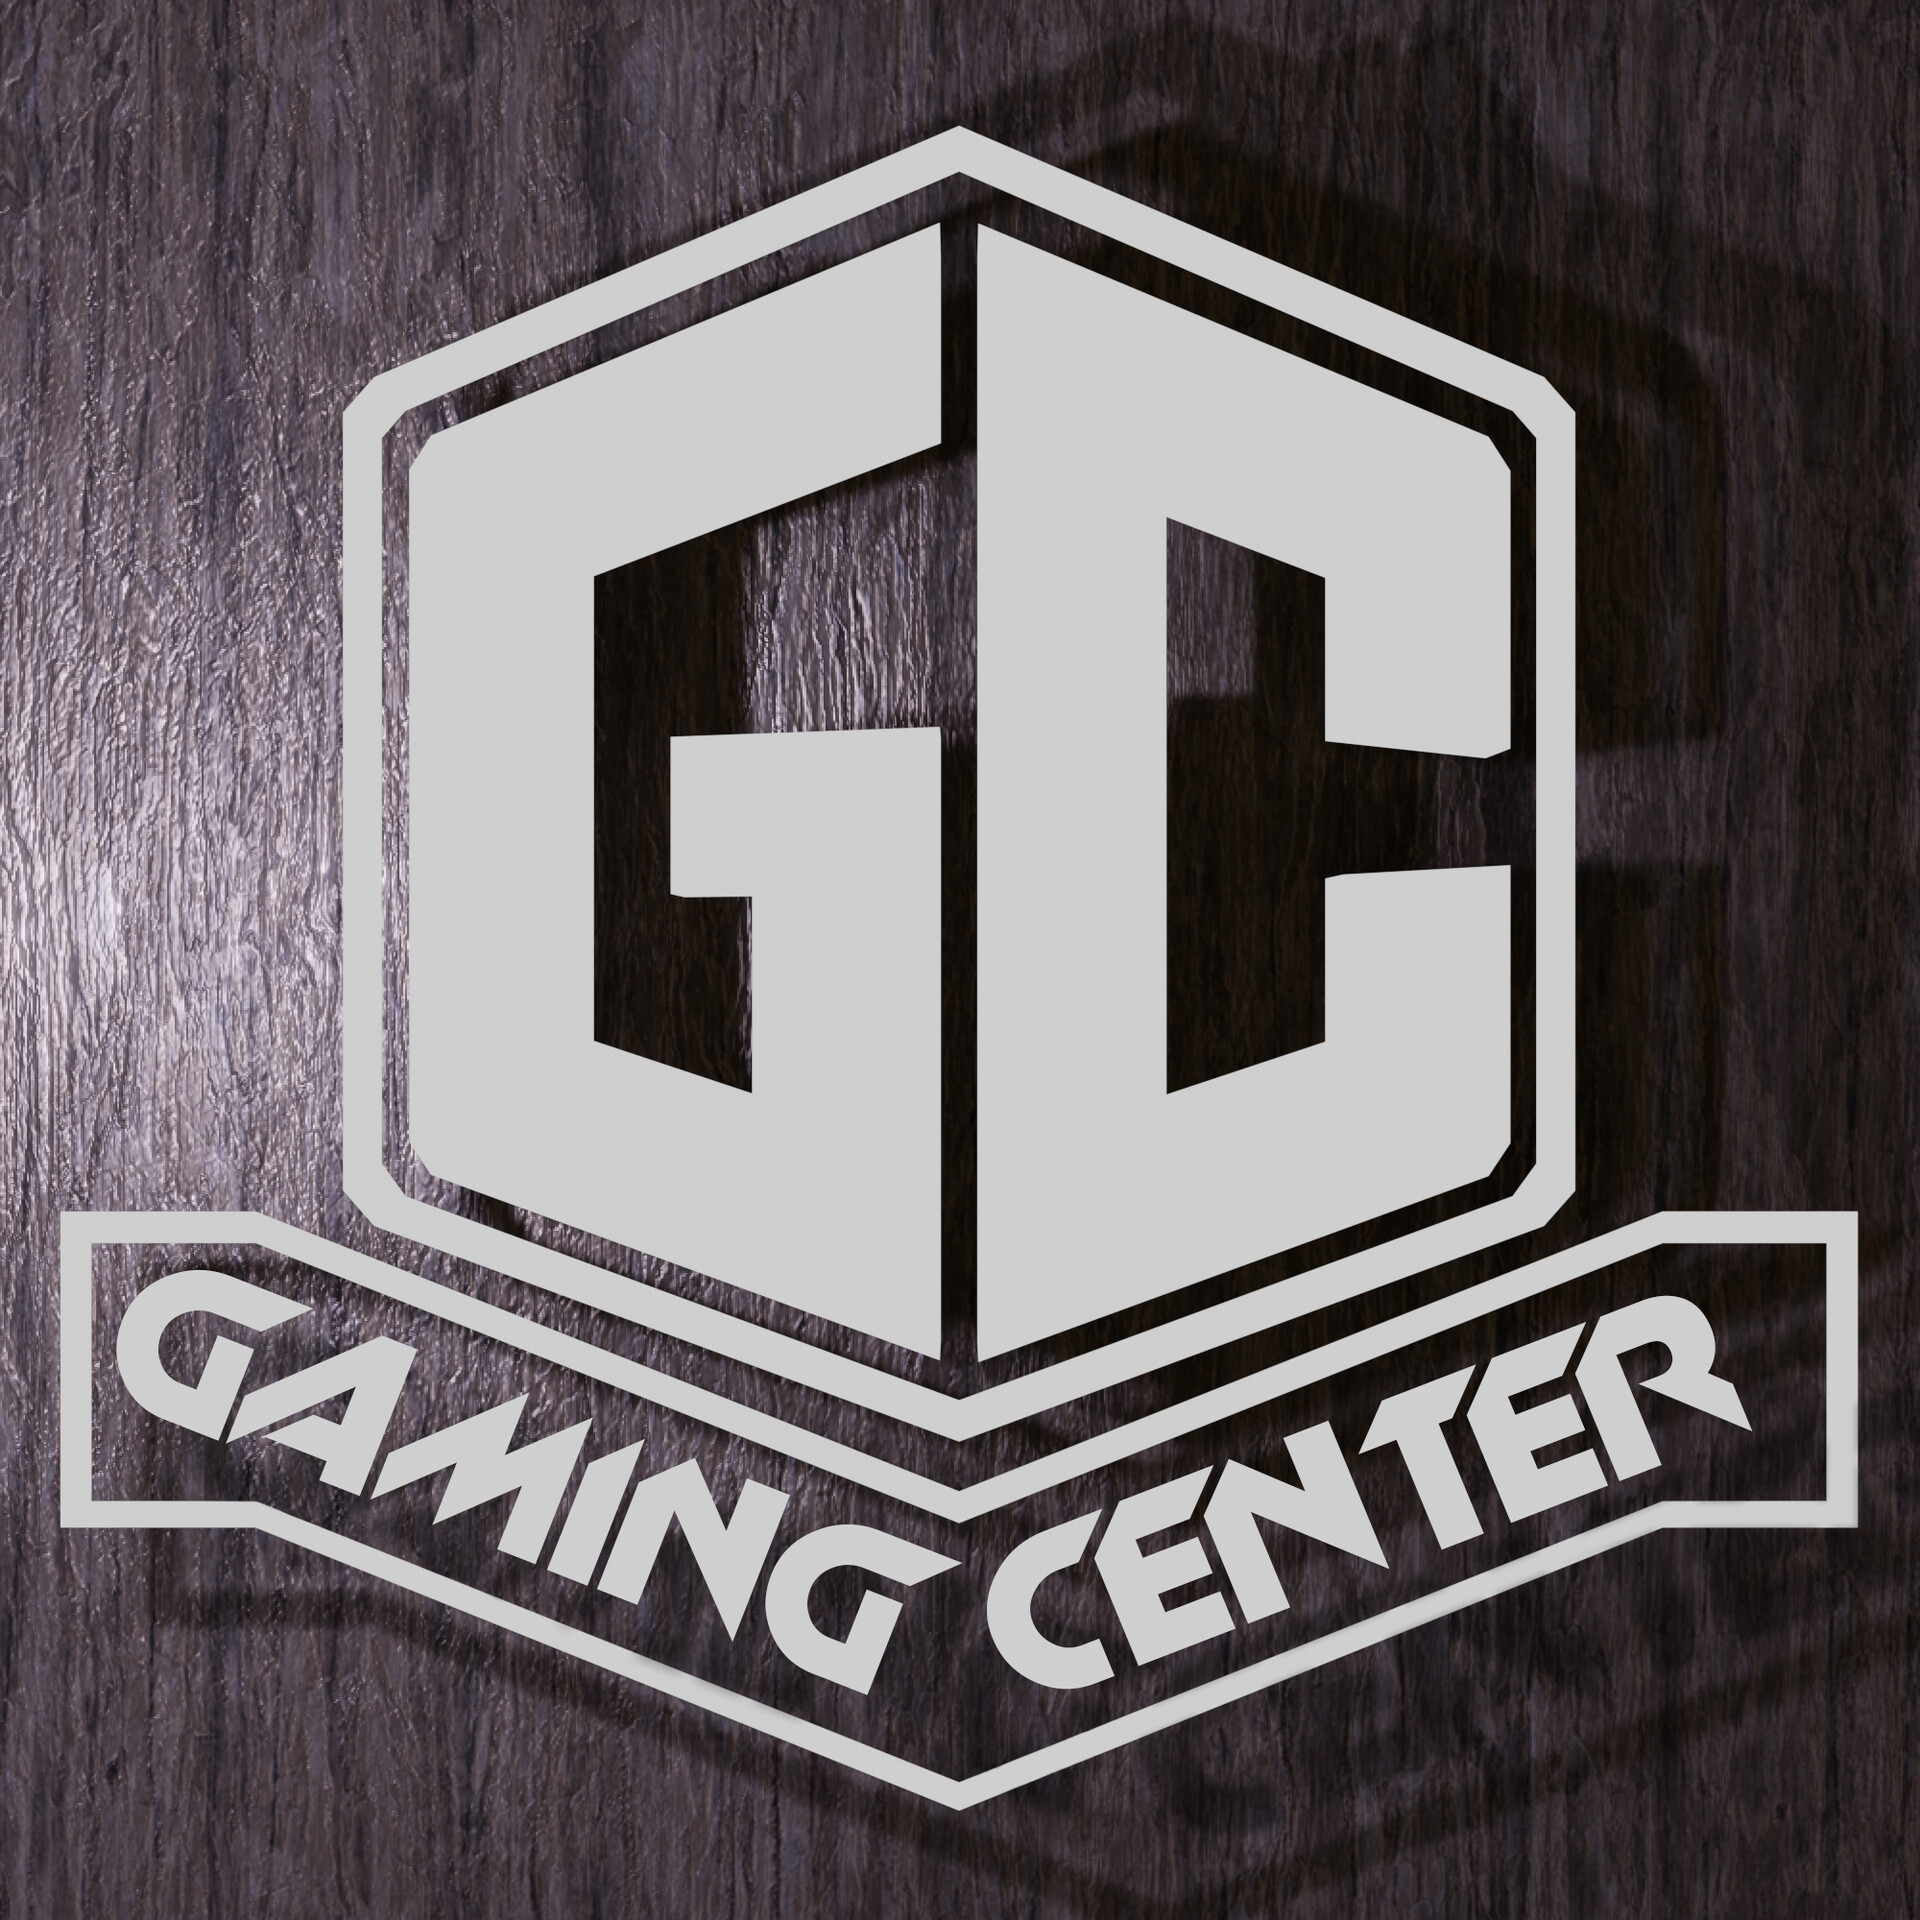 Games server ru. Логотип игрового сервера. GAMECENTER логотип. Игровой центр пиктограмма. Гейминг центр.